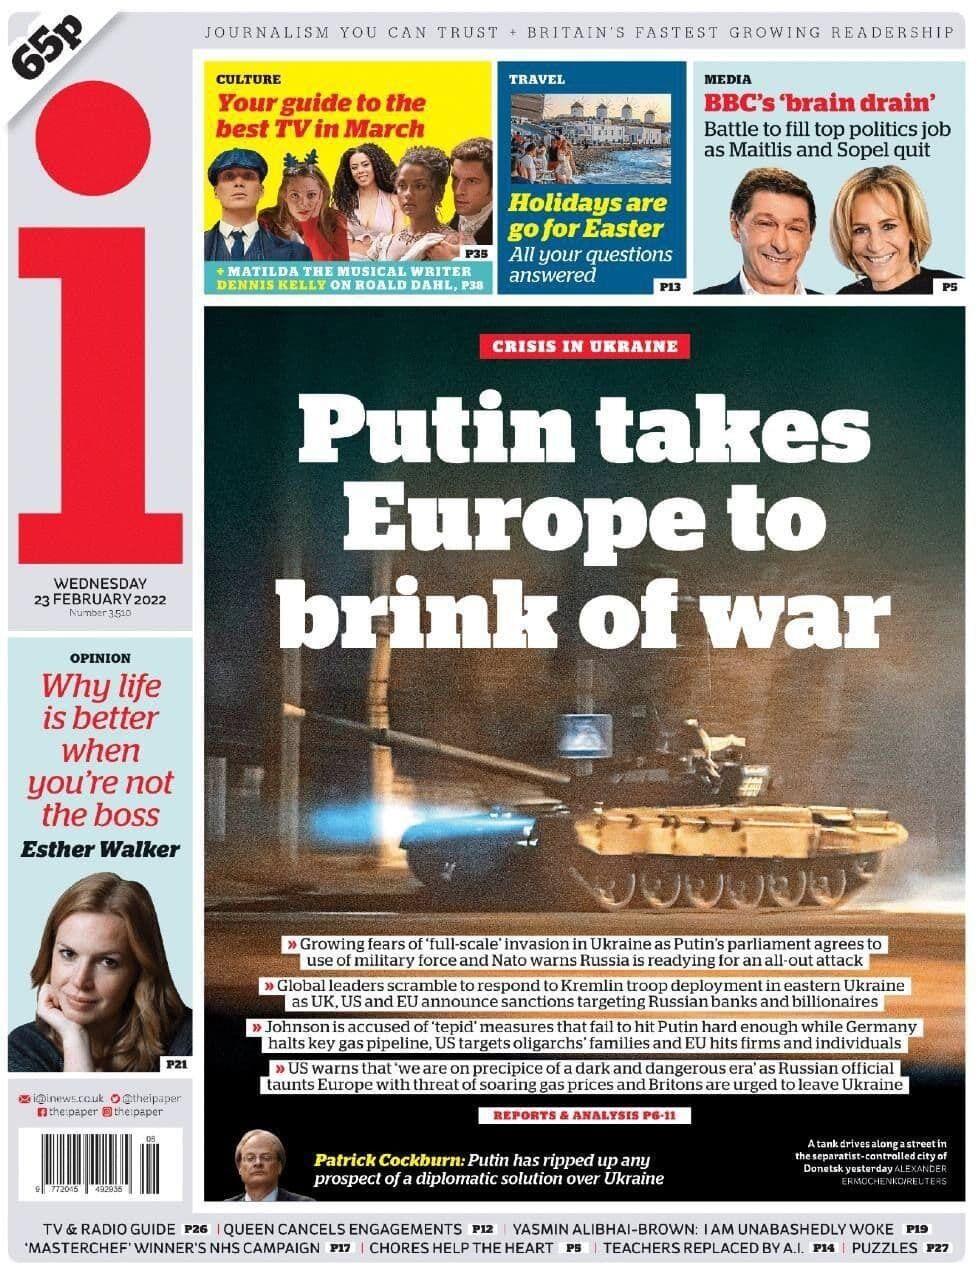 ЗМІ наголосили, що Путін поставив Європу на межу війни